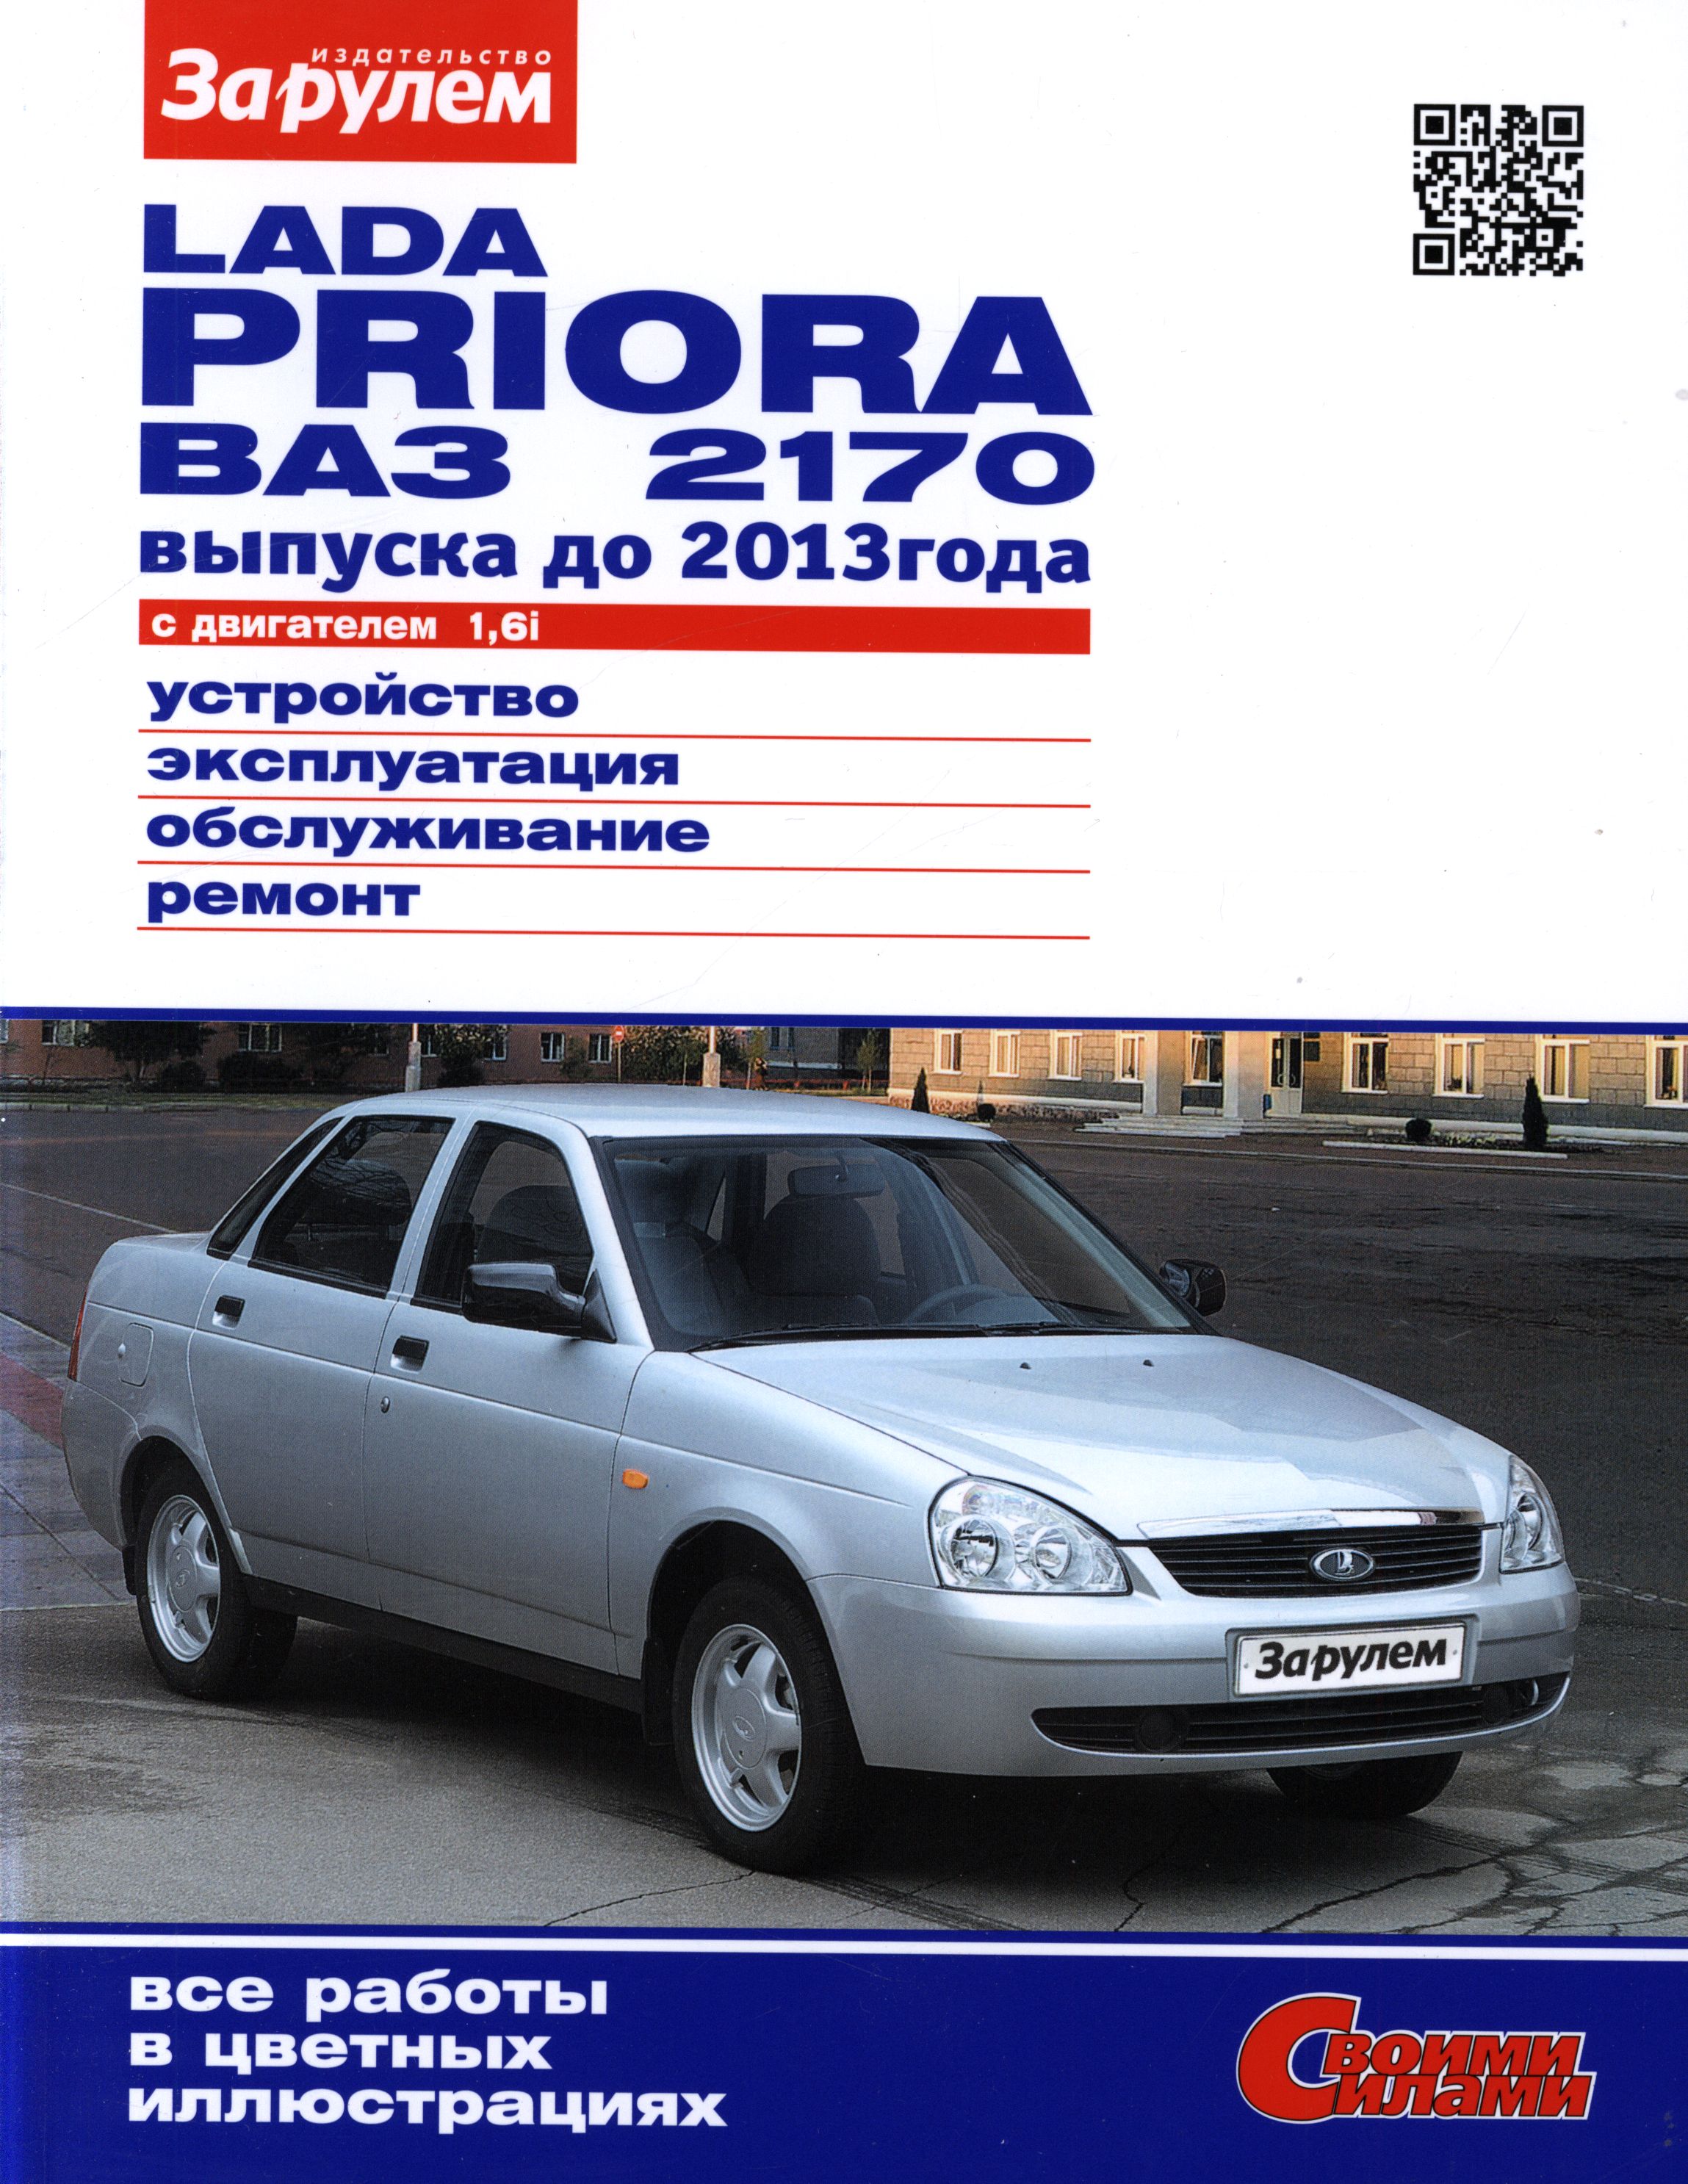 ВАЗ 2170 LADA PRIORA 2007-2013 Руководство по ремонту цветное